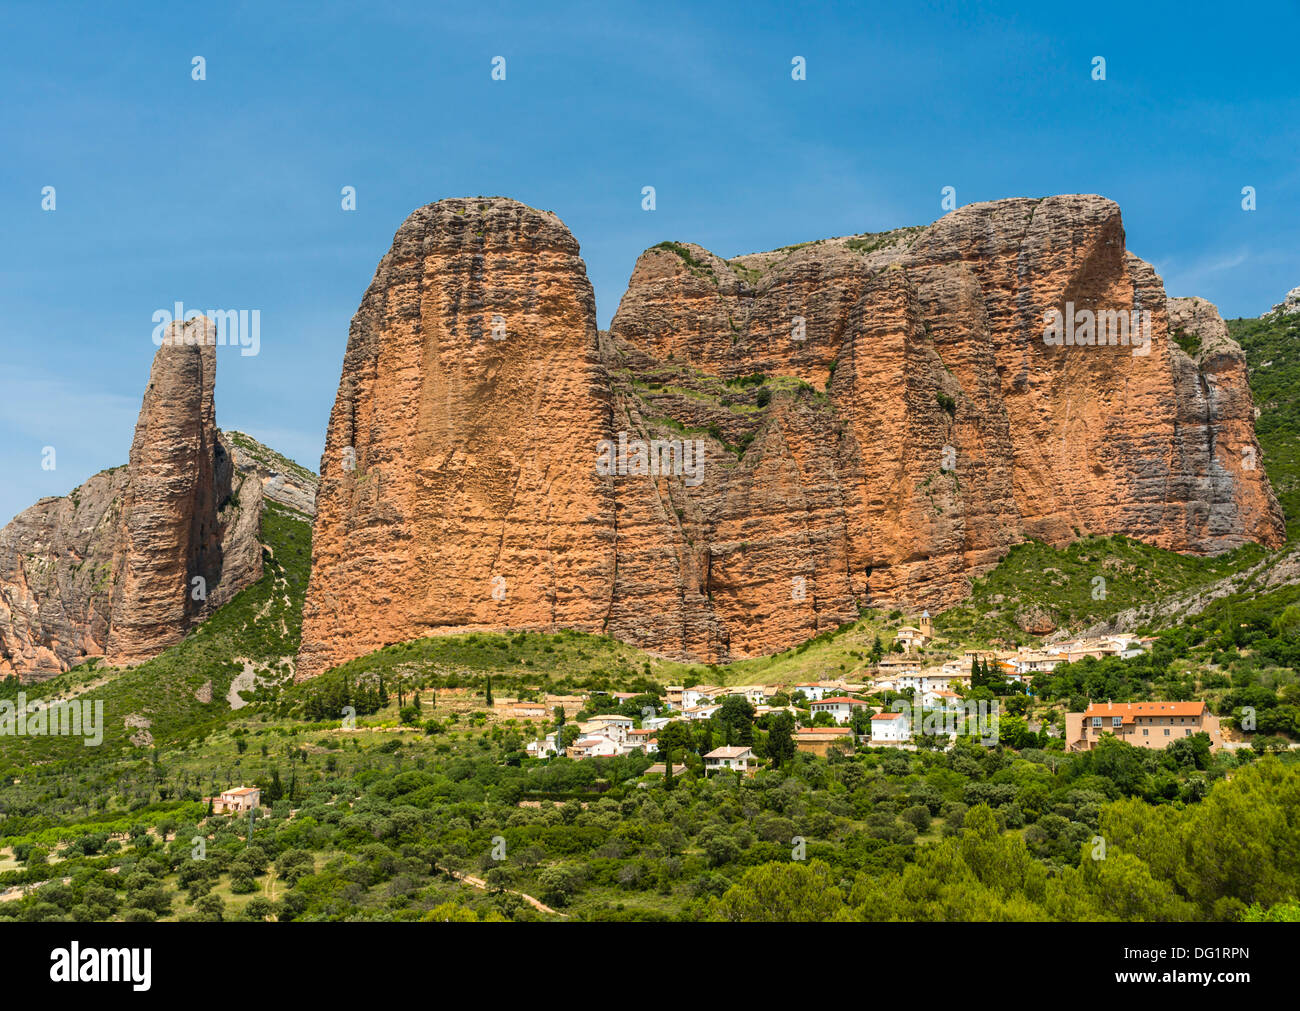 Nordwest-Spanien - Riglos, in der Nähe von Huesca. Das Dorf schmiegt sich unterhalb der riesigen Sandstein Butte Mallos de Riglos genannt. Stockfoto